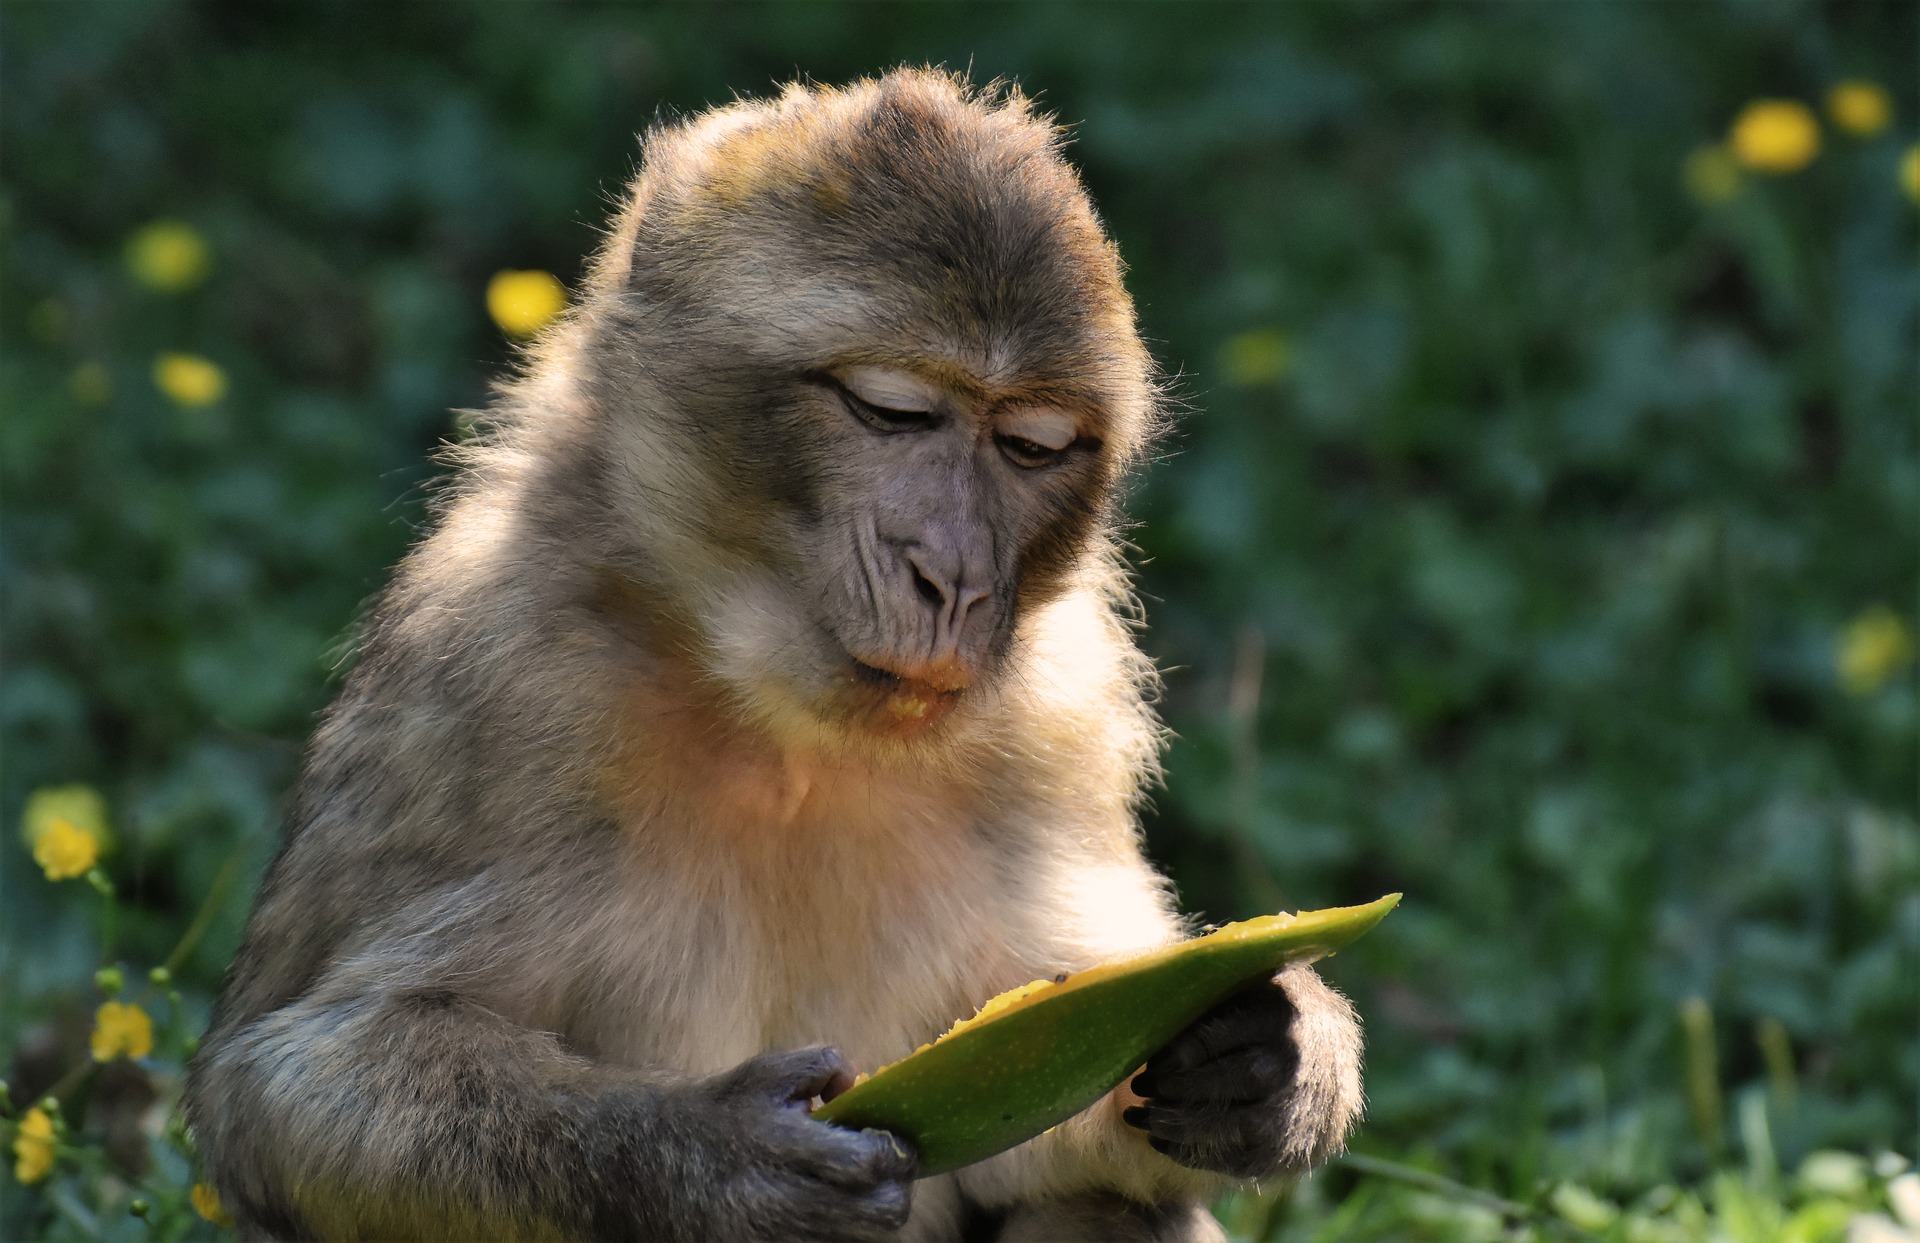 Bạn là người yêu động vật? Vậy hãy xem hình ảnh đáng yêu của con khỉ, chúng sẽ khiến bạn phải cười toe toét. Cảm giác thư giãn và hạnh phúc sẽ đến với bạn khi nhìn thấy những hình ảnh đáng yêu này.